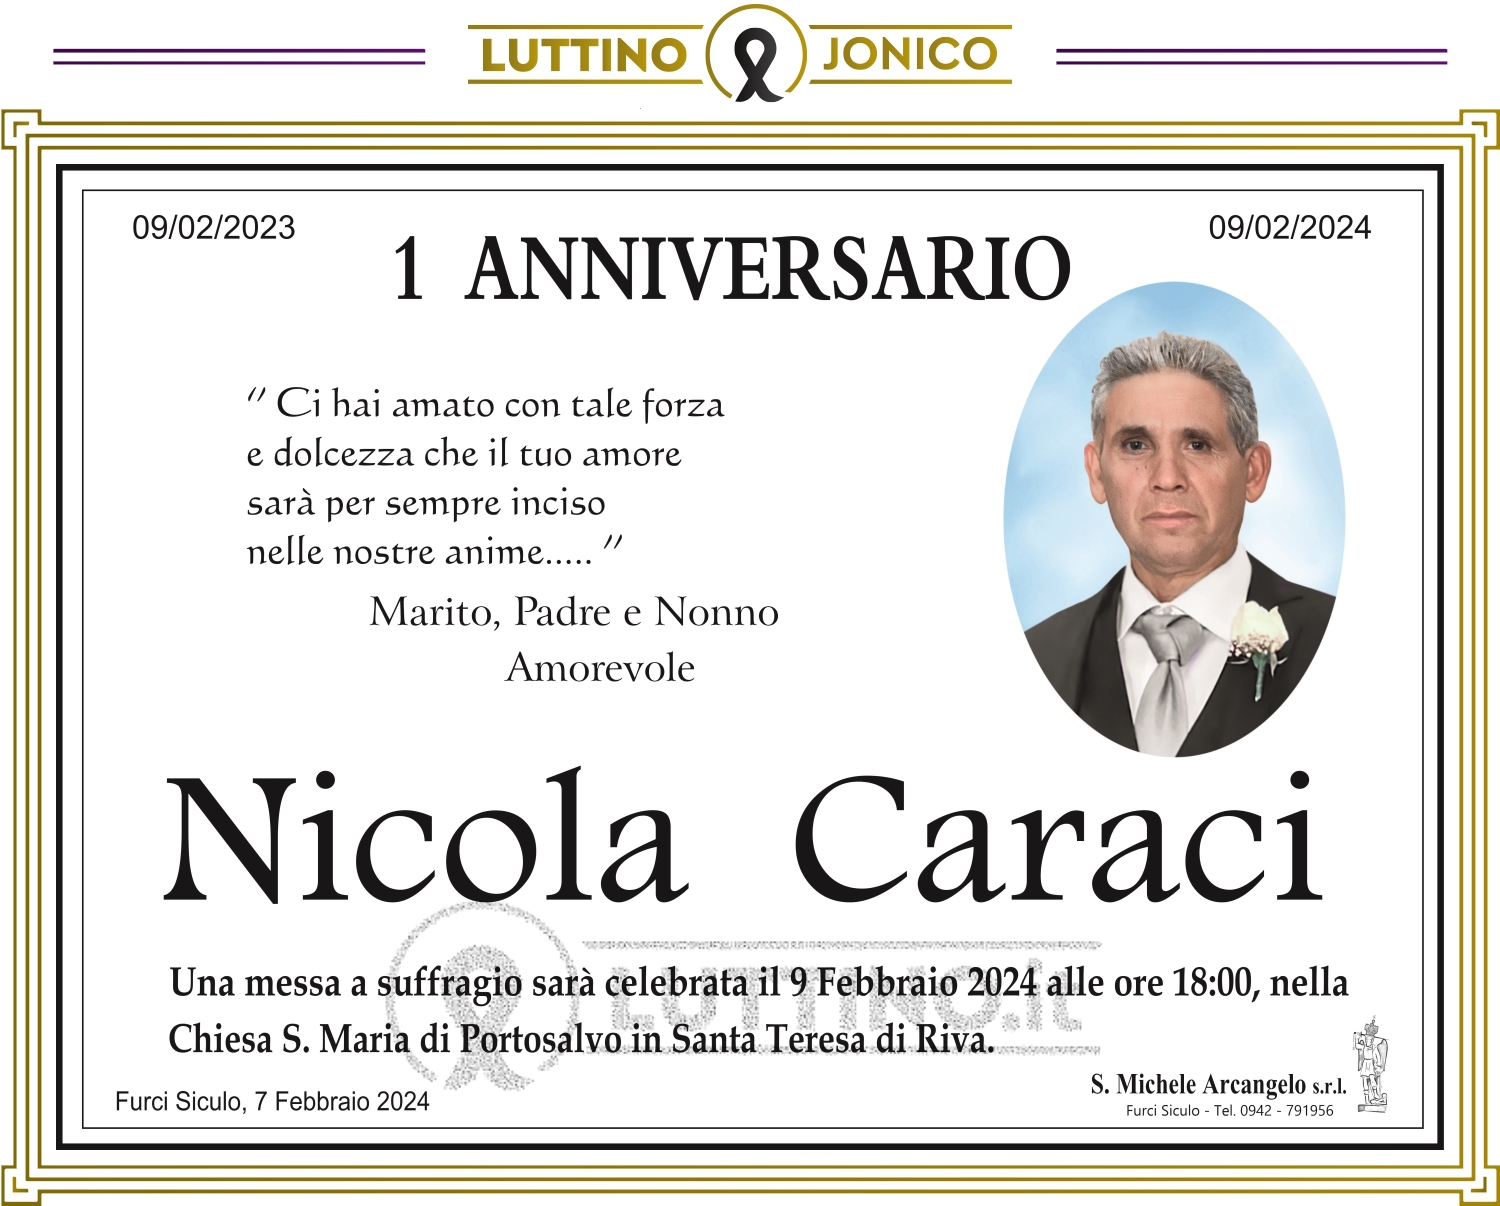 Nicola Caraci